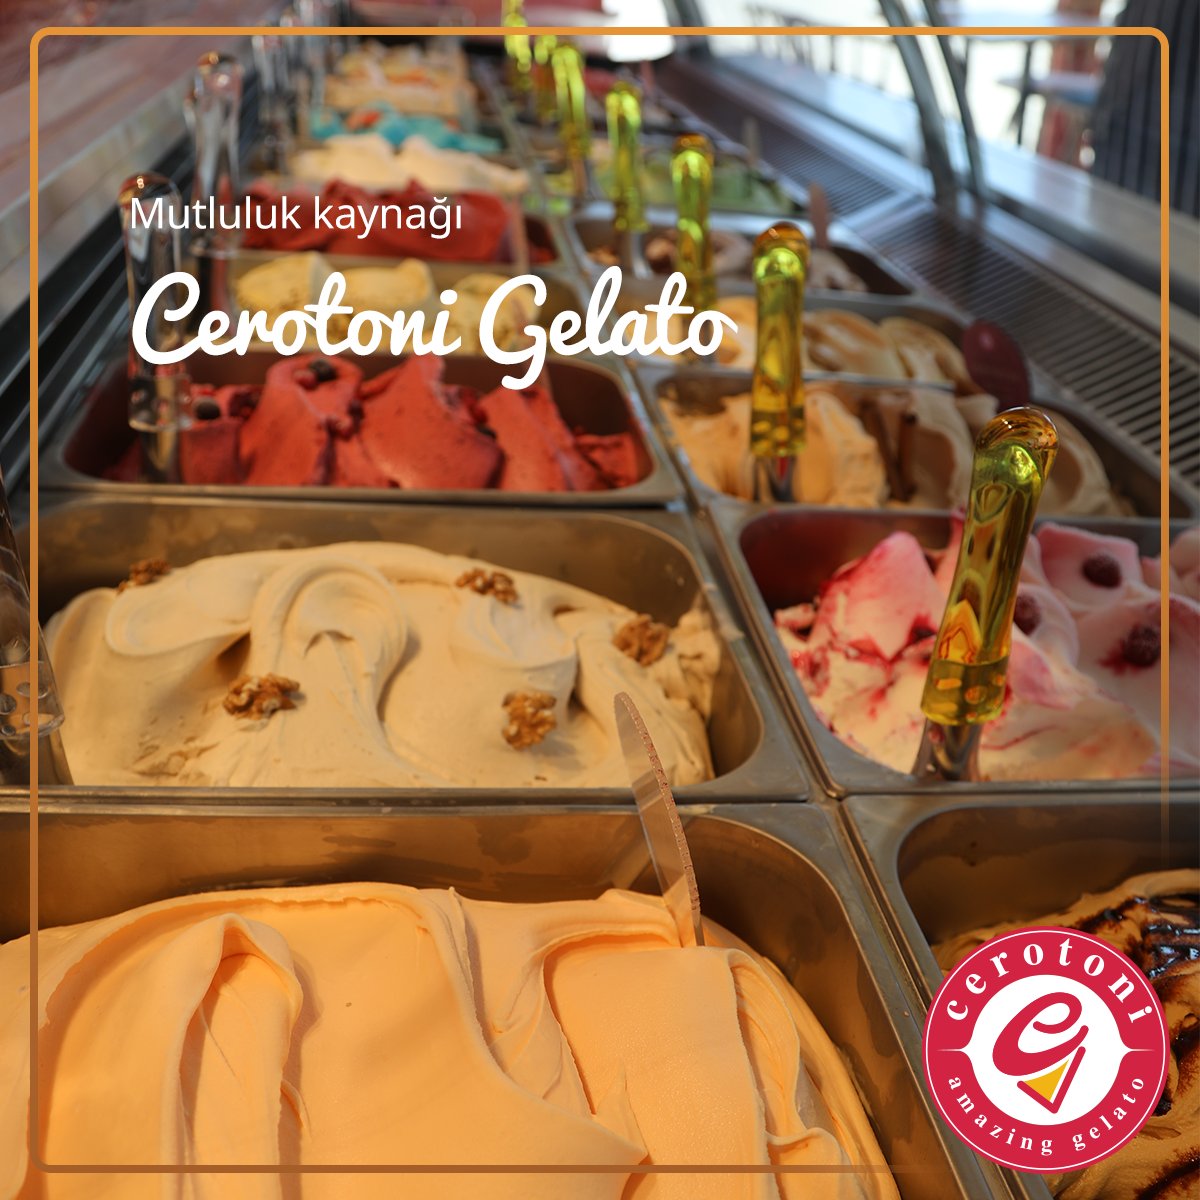 Biraz da Cerotoni gelatoların mutlulukla olan ilişkisini konuşalım istiyoruz. Size mutluluk katan Cerotoni gelato hangisi? 🍨

#cerotoni #cerotonigelato #dondurma #gelato #italyandondurması #nazilli #kuşadası #buca #bostanlı #italya #roma #dondurmakeyfi